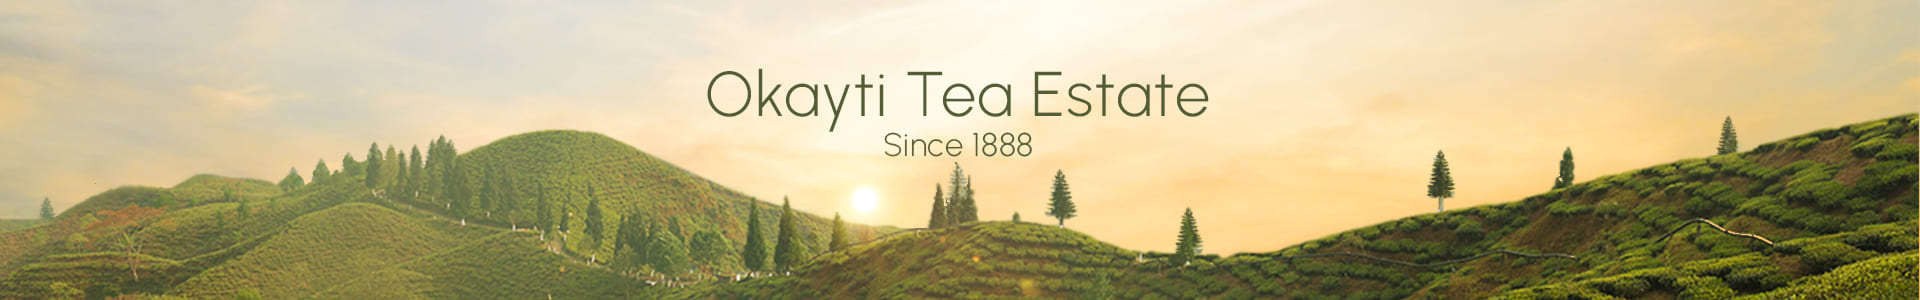 Okayti Tea Estate